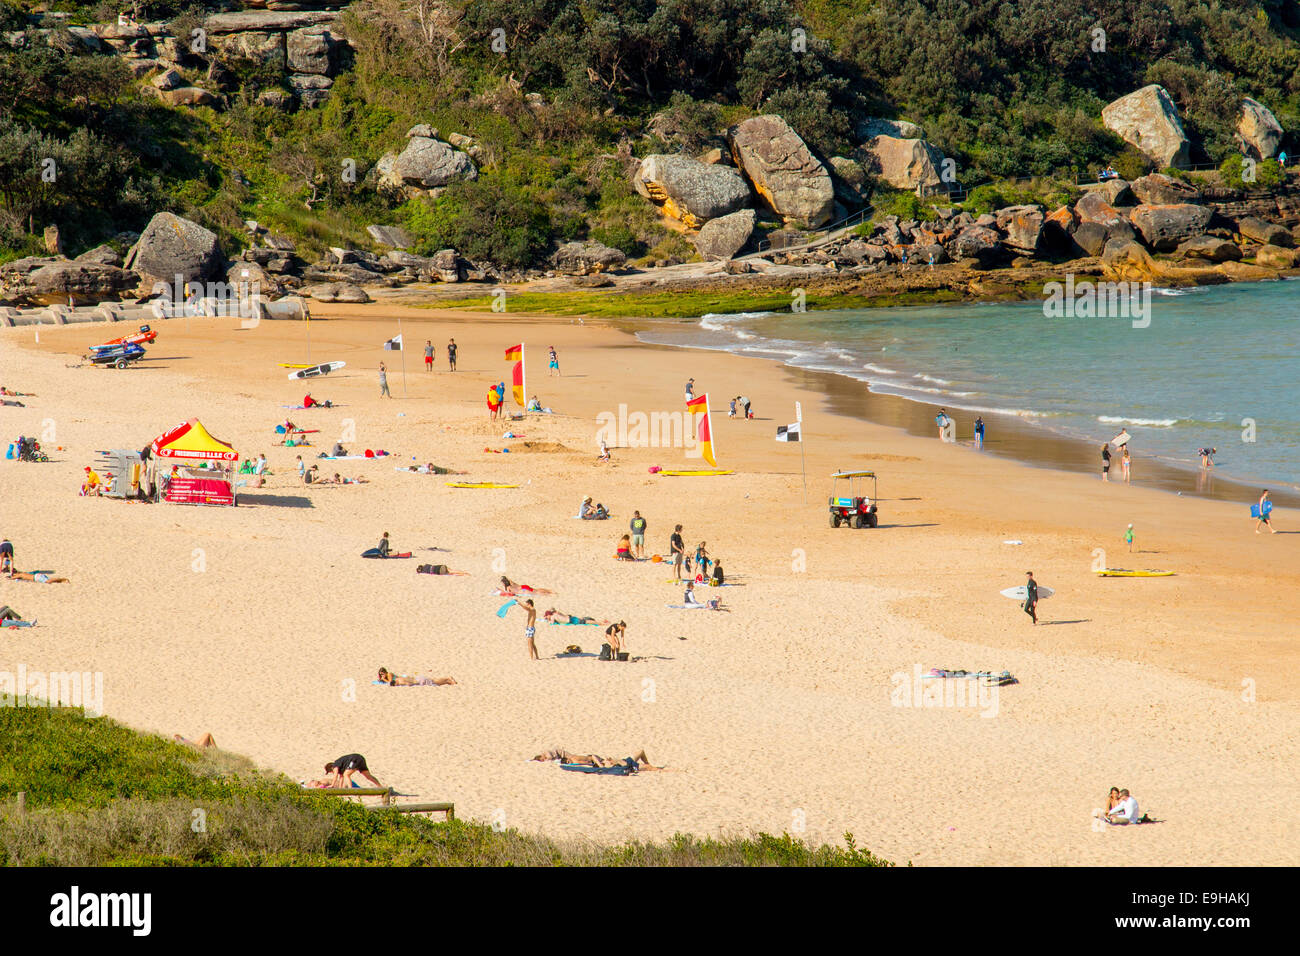 Plage d'eau douce, l'une des plages du nord de Sydney, printemps, New South Wales Australie Banque D'Images